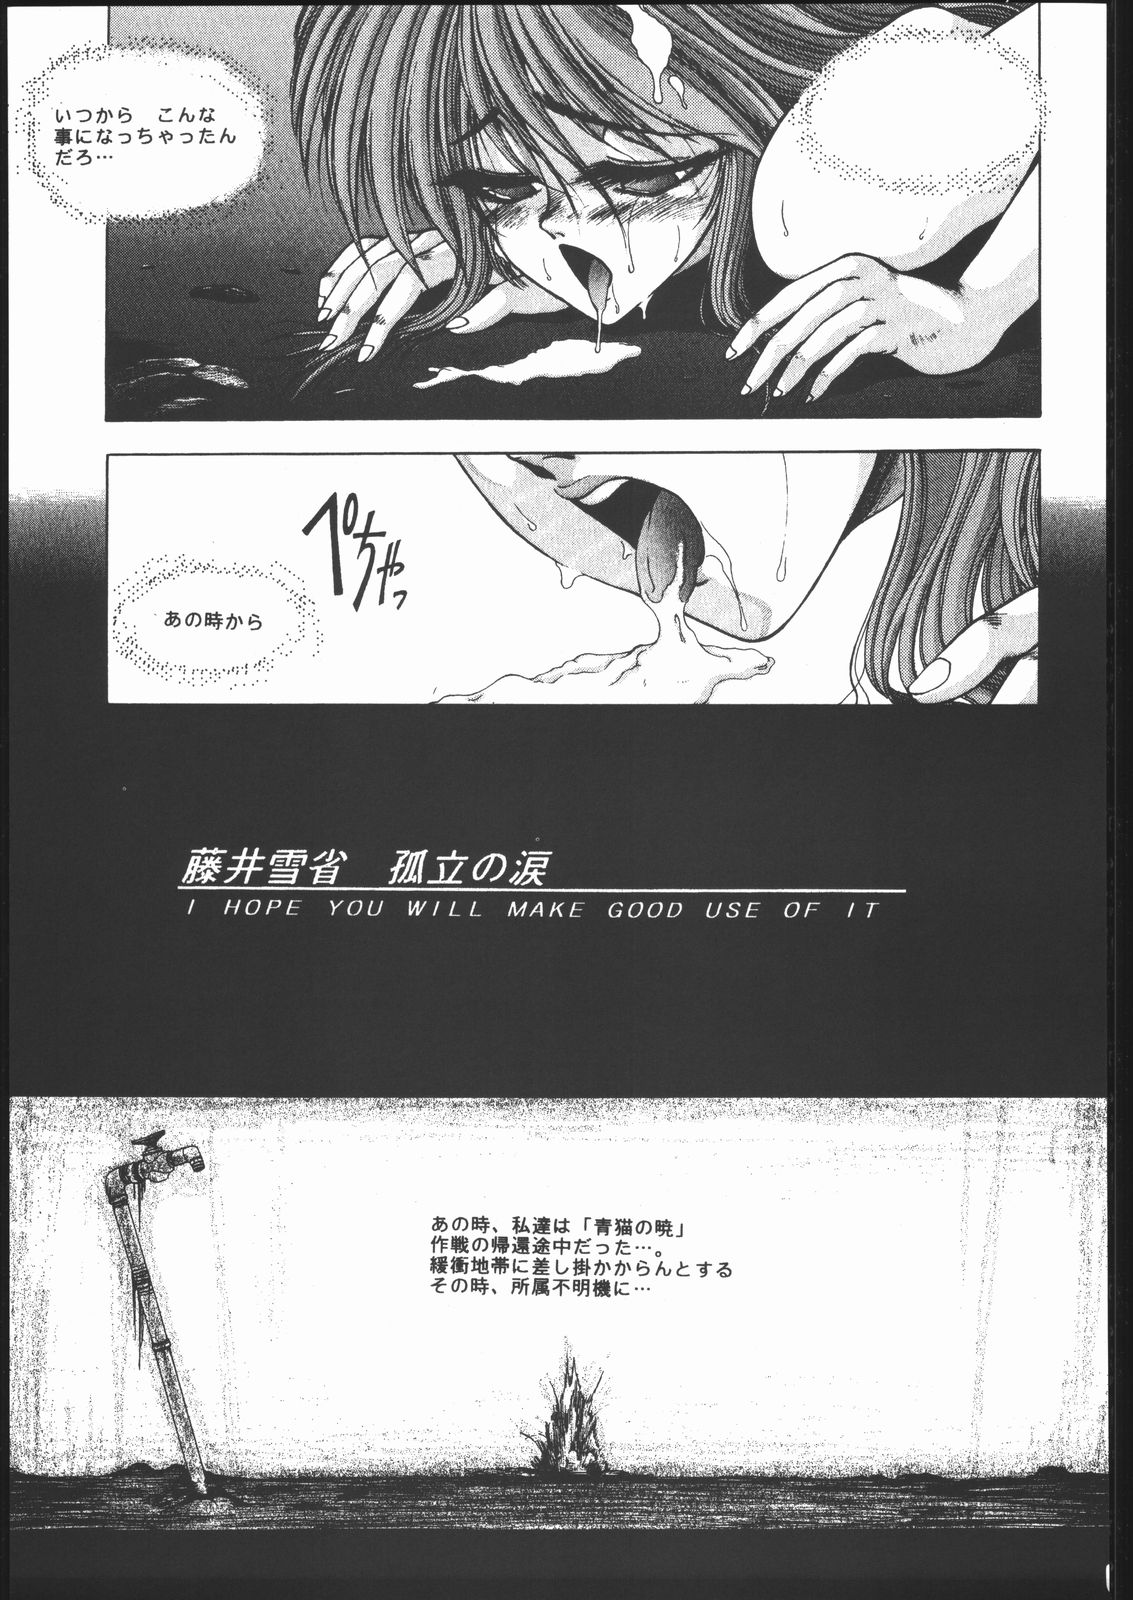 [HITECH JAPAN (Shiki Satoshi)] CATALOGUE 1988-1995 (Various) [ハイテクJAPAN (士貴智志)] CATALOGUE 1988-1995